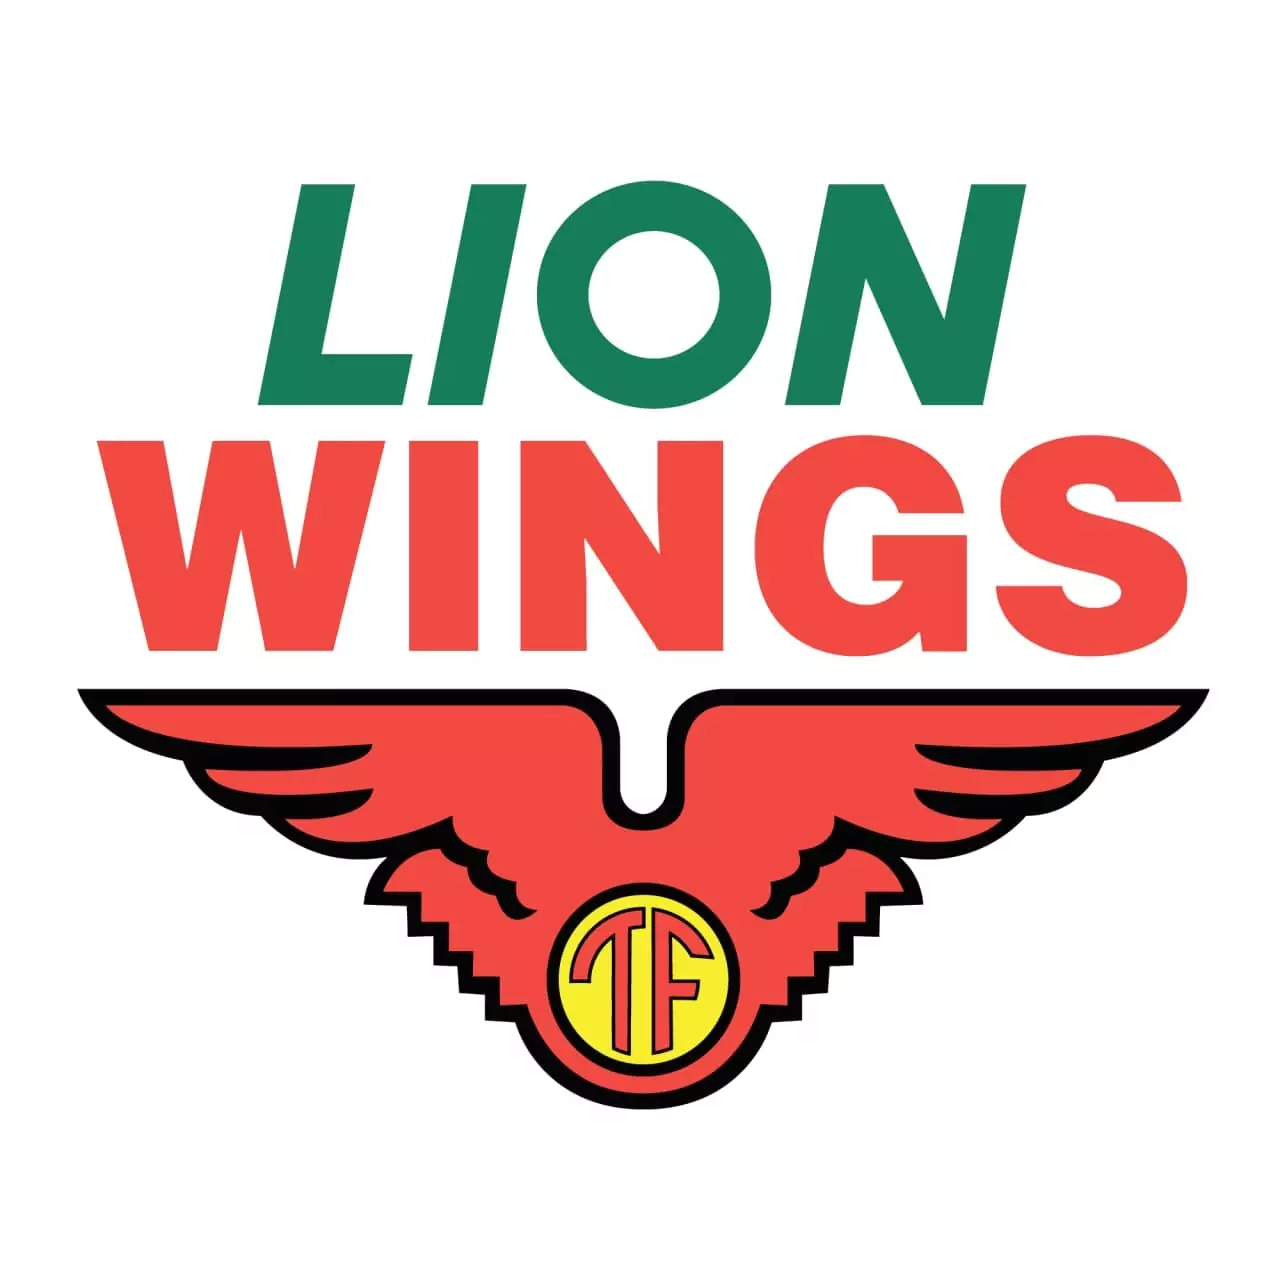 Lion Wings